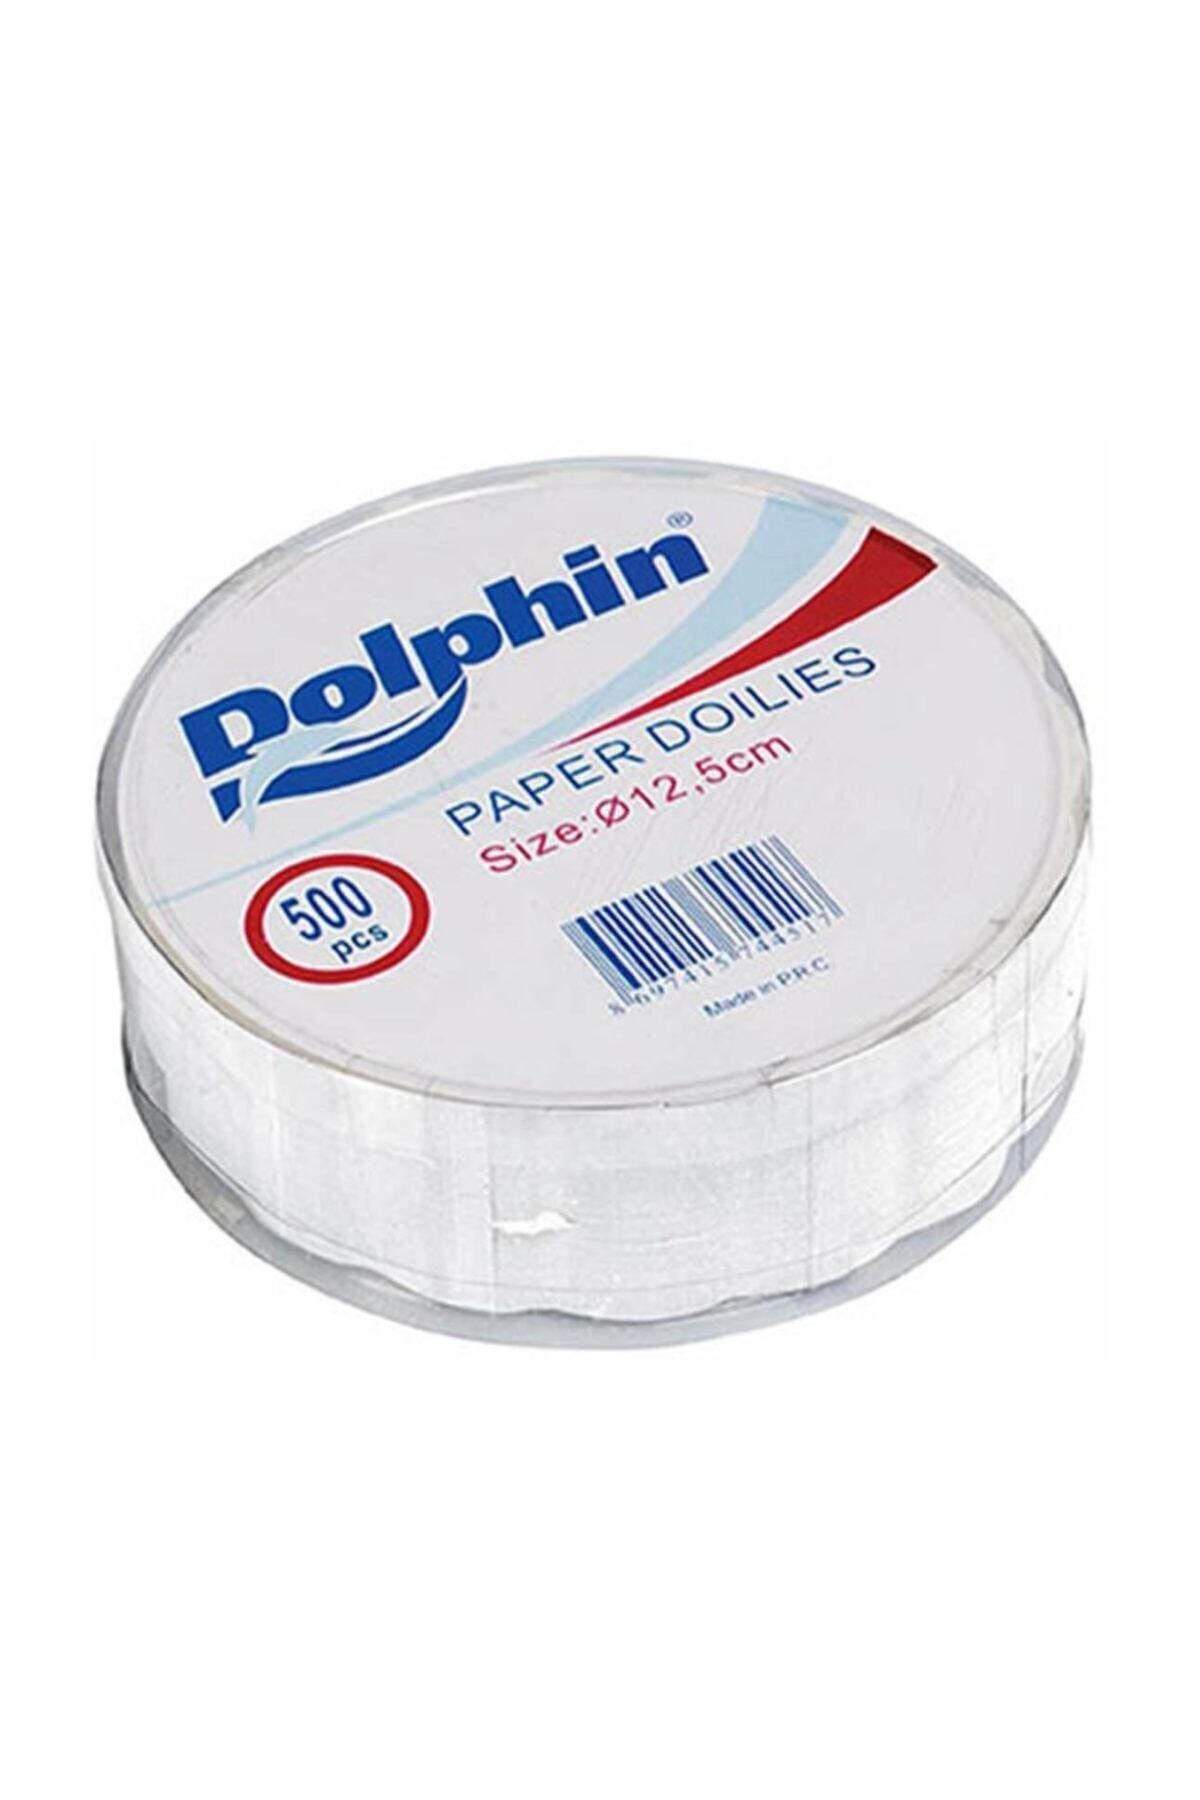 Dolphin Dantel Kağıt 12,5 Cm 500 Adet